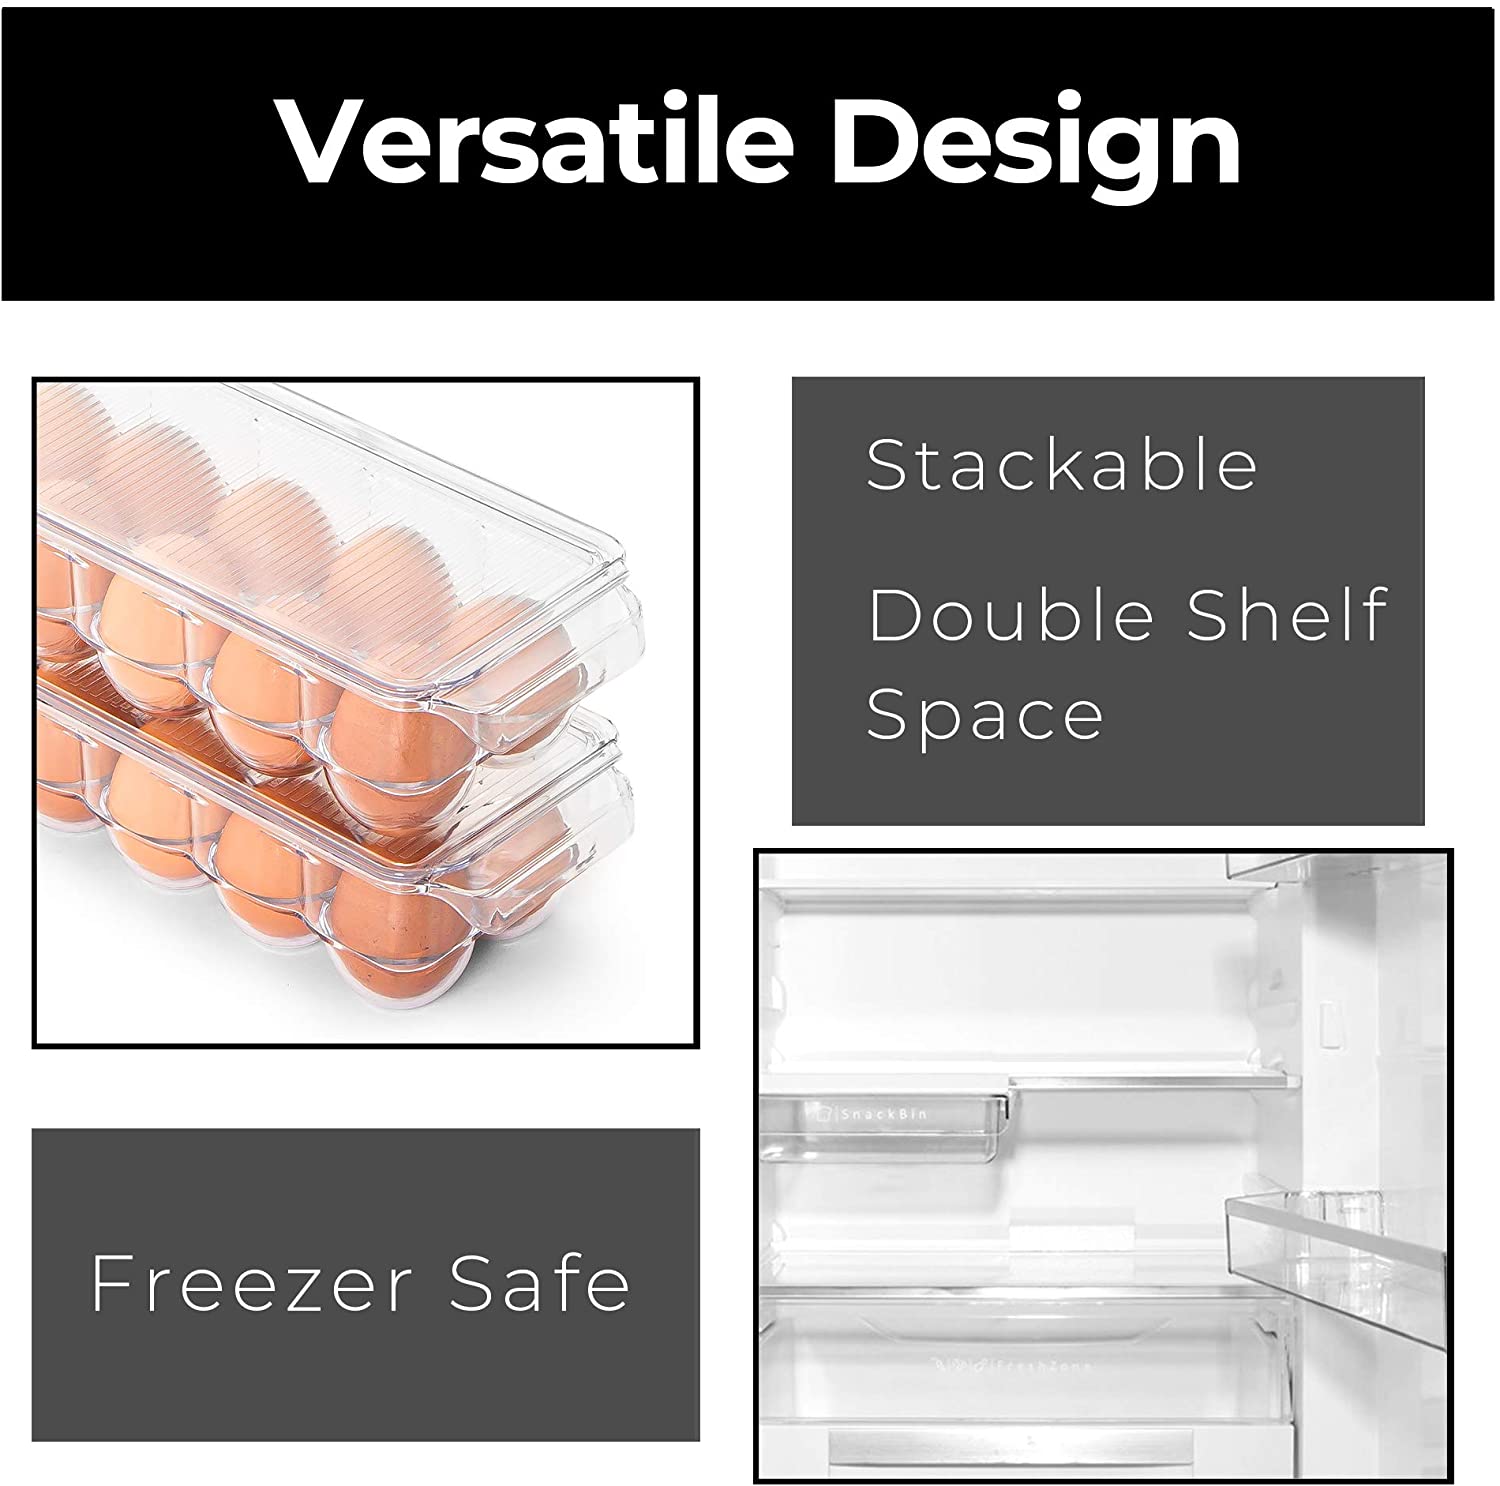 Stackable Refrigerator Egg Holder Bin with Handle and Lid - Smart Design® 4